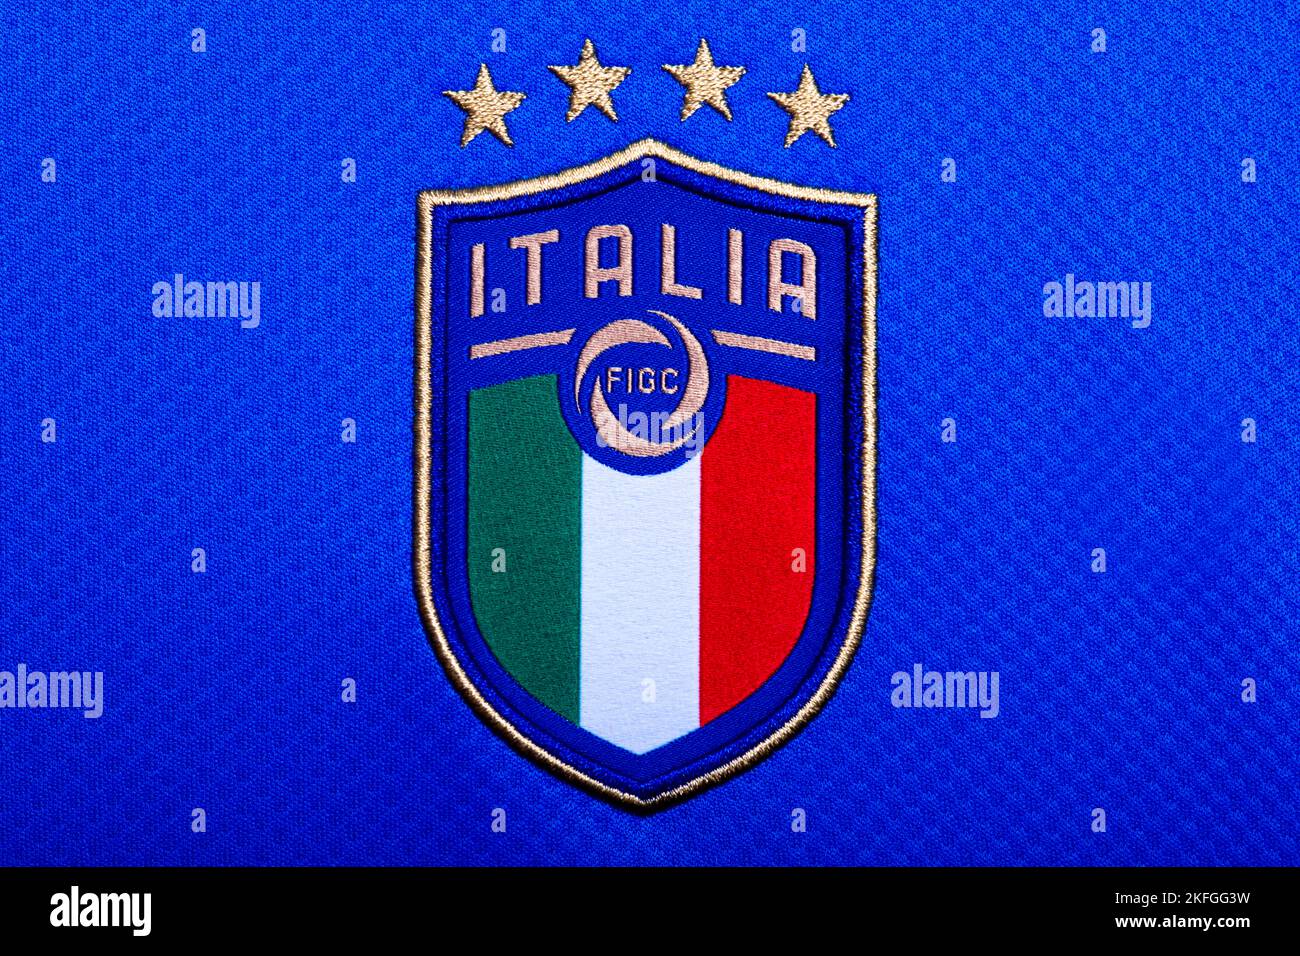 Nahaufnahme von der italienischen Nationalmannschaft Fußballtrikot Stockfoto